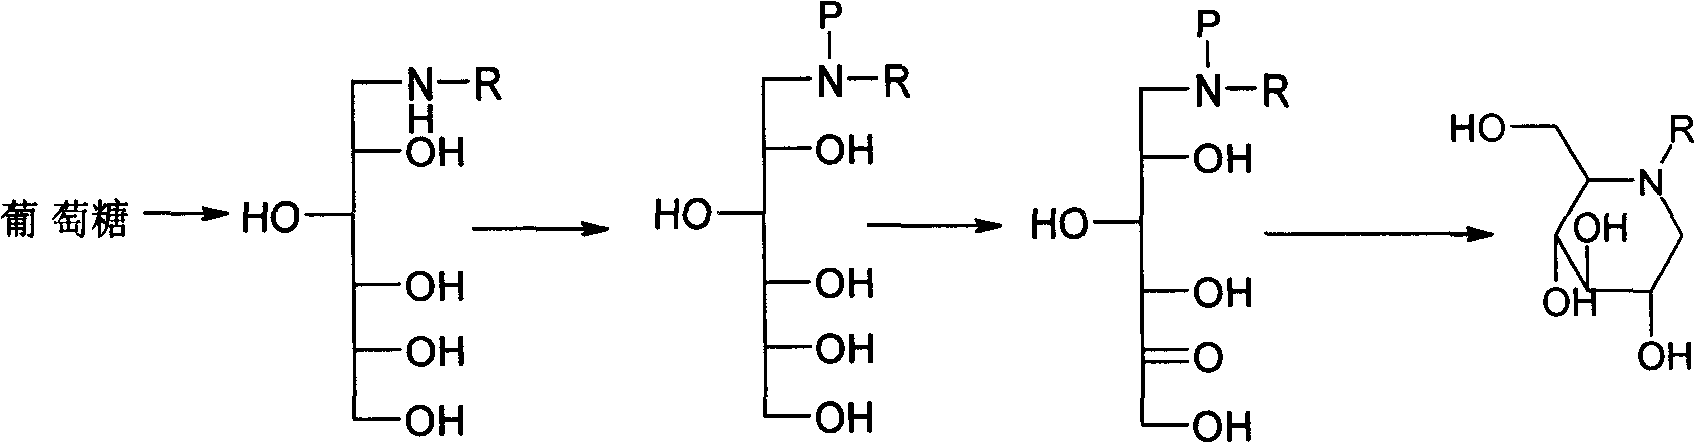 Method for preparing miglitol midbody N-substituted-1-deoxidization nojirimycin derivative